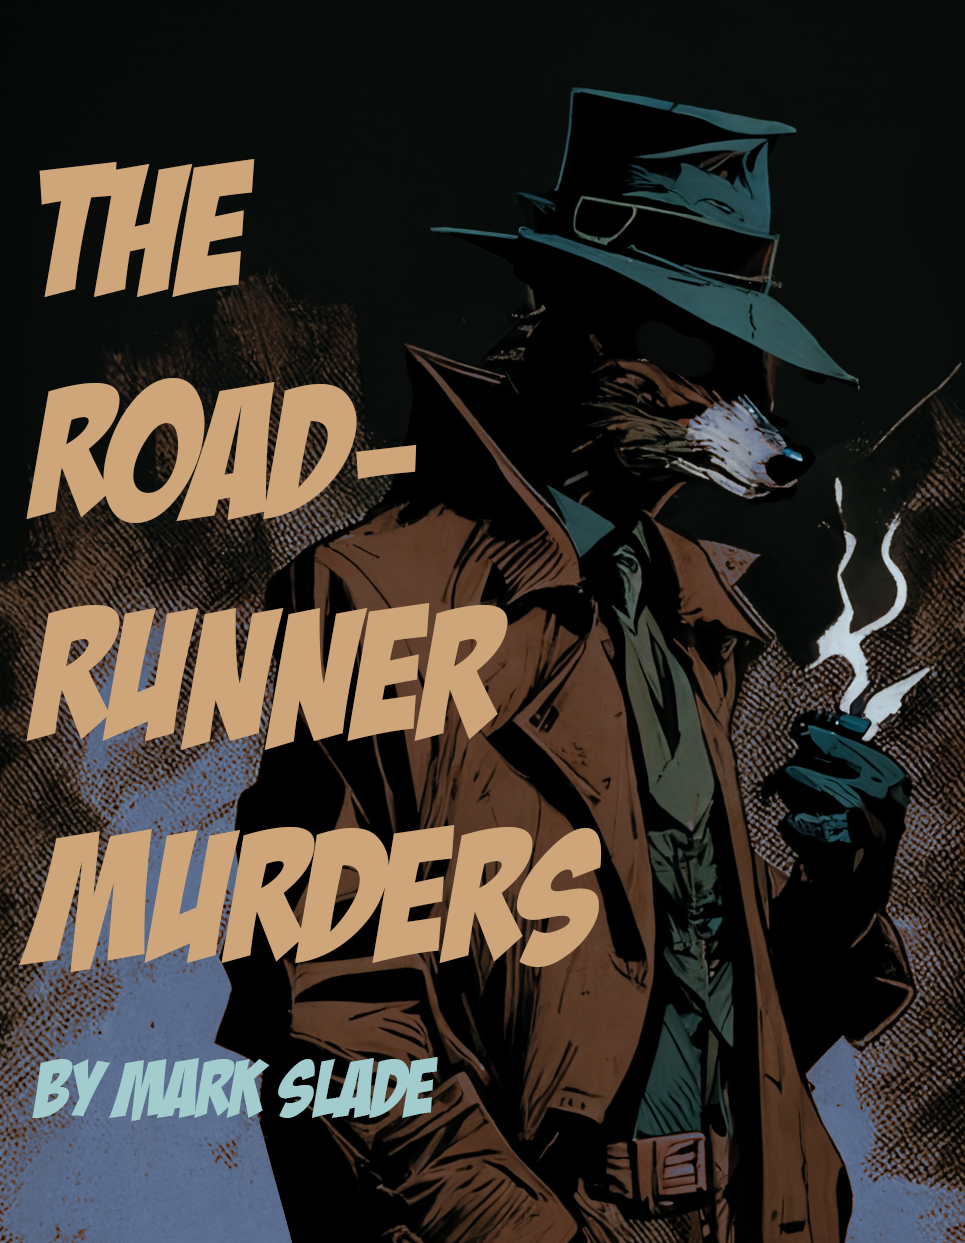 The Roadrunner Murder